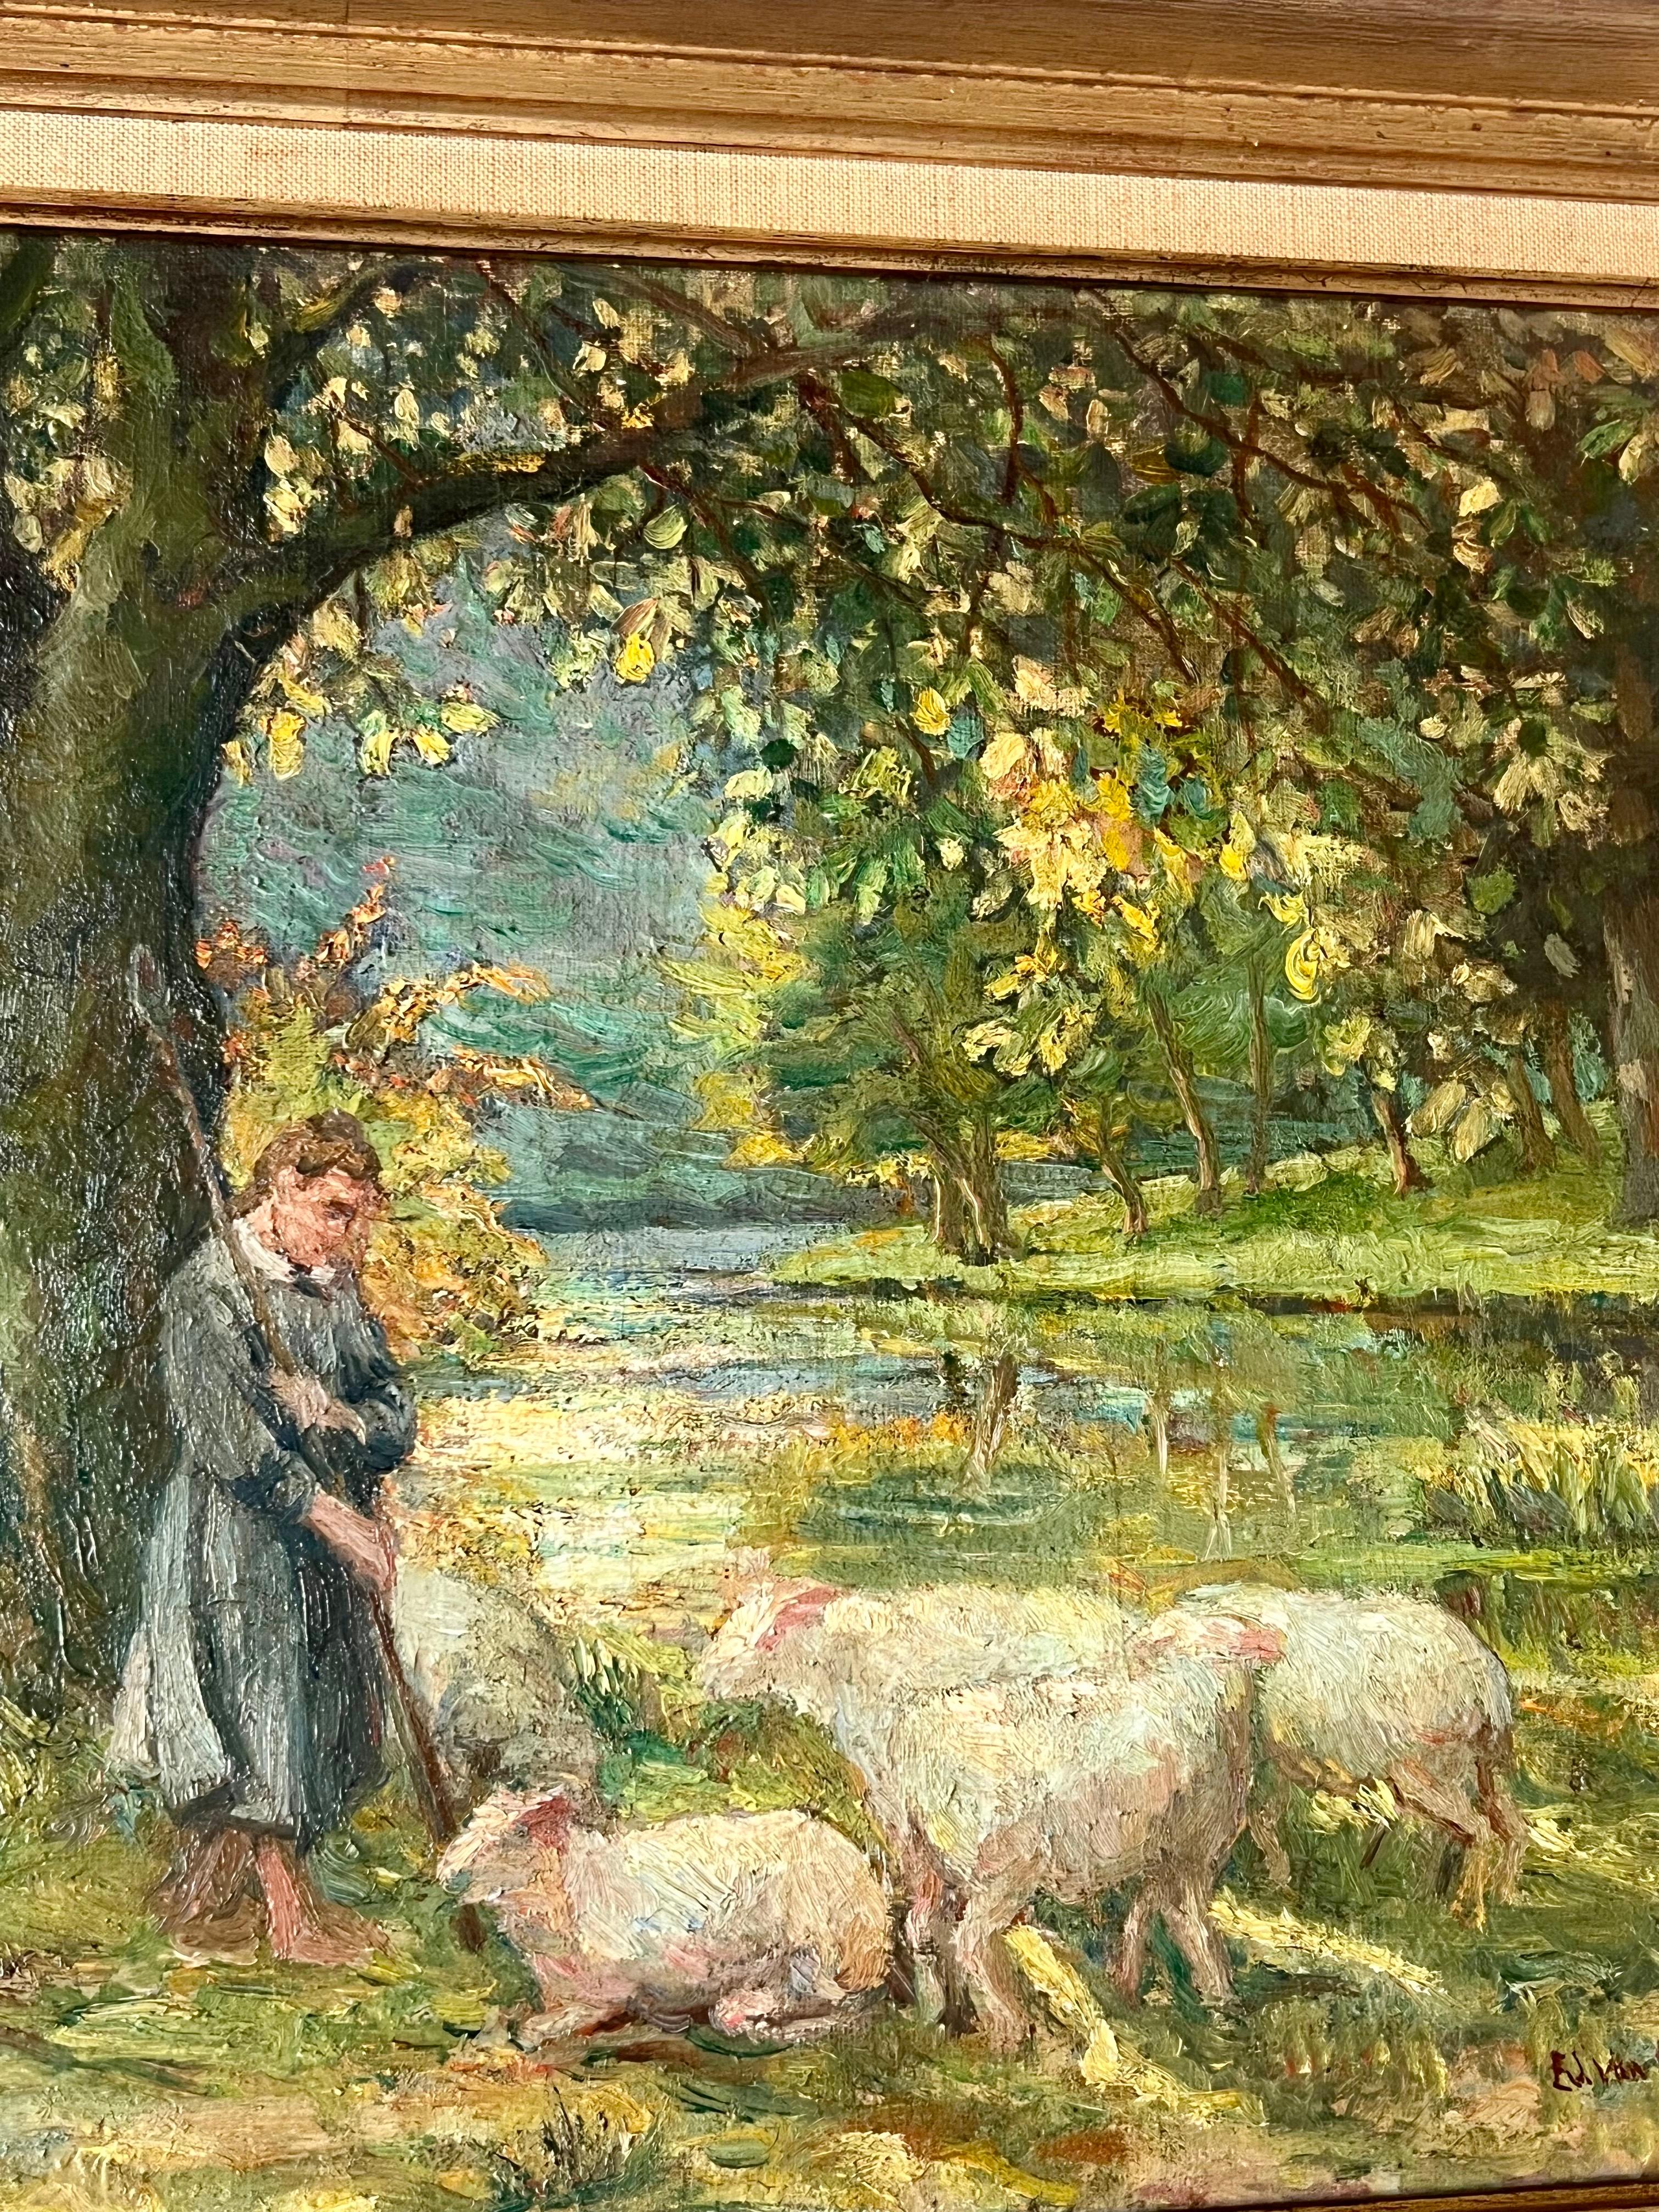 Peinture impressionniste du XIXe siècle représentant une belle journée à la campagne.

On peut voir une jeune fille debout devant son troupeau dans une campagne luxuriante et magnifique. Un petit ruisseau coule dans la forêt à l'arrière-plan. La